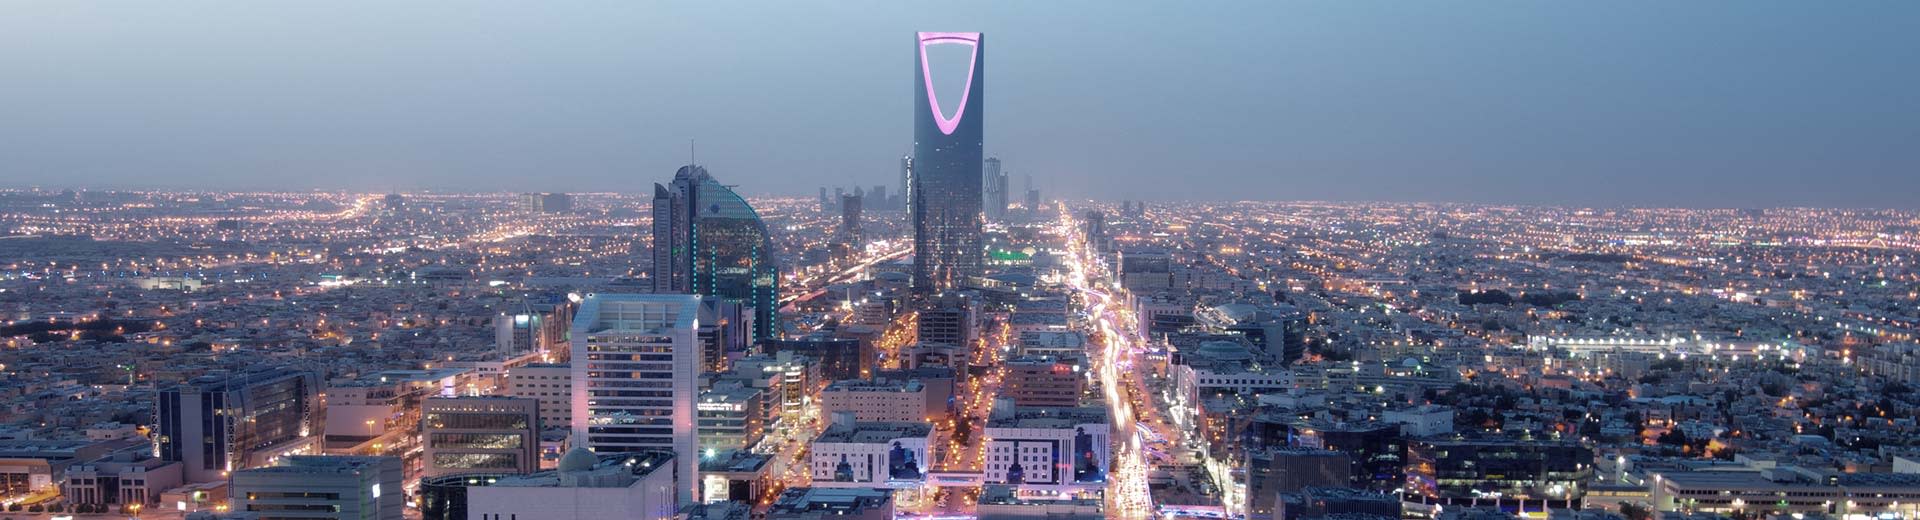 Le système de grille tentaculaire de Riyad domine la vue, avec le célèbre gratte-ciel d'ouvre-bouteille perché iconiquement.